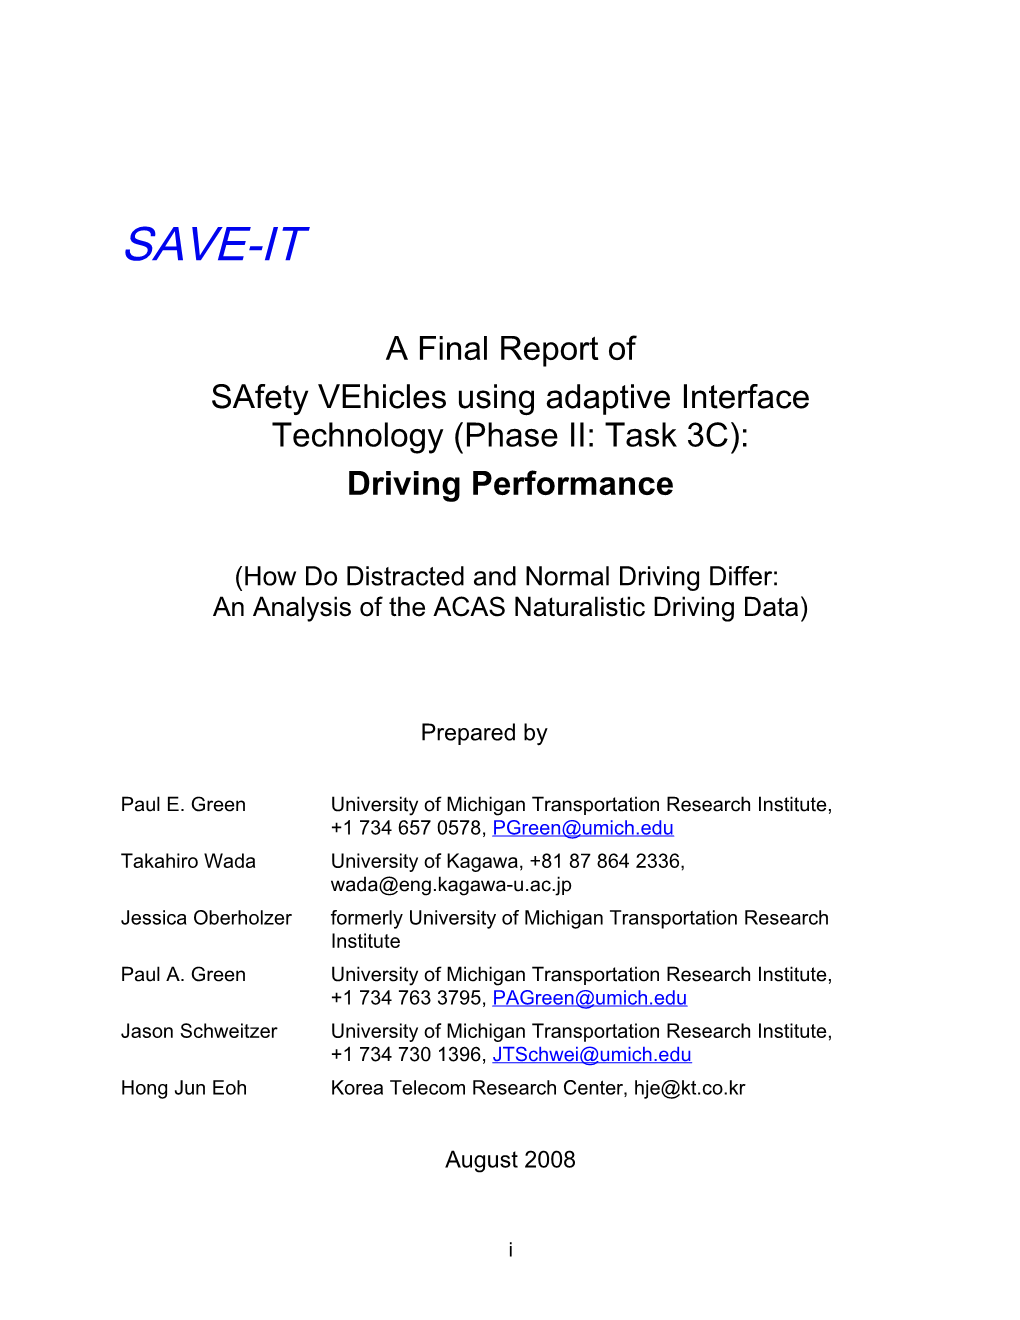 Safety Vehicles Using Adaptive Interface Technology (Phase II: Task 3C)